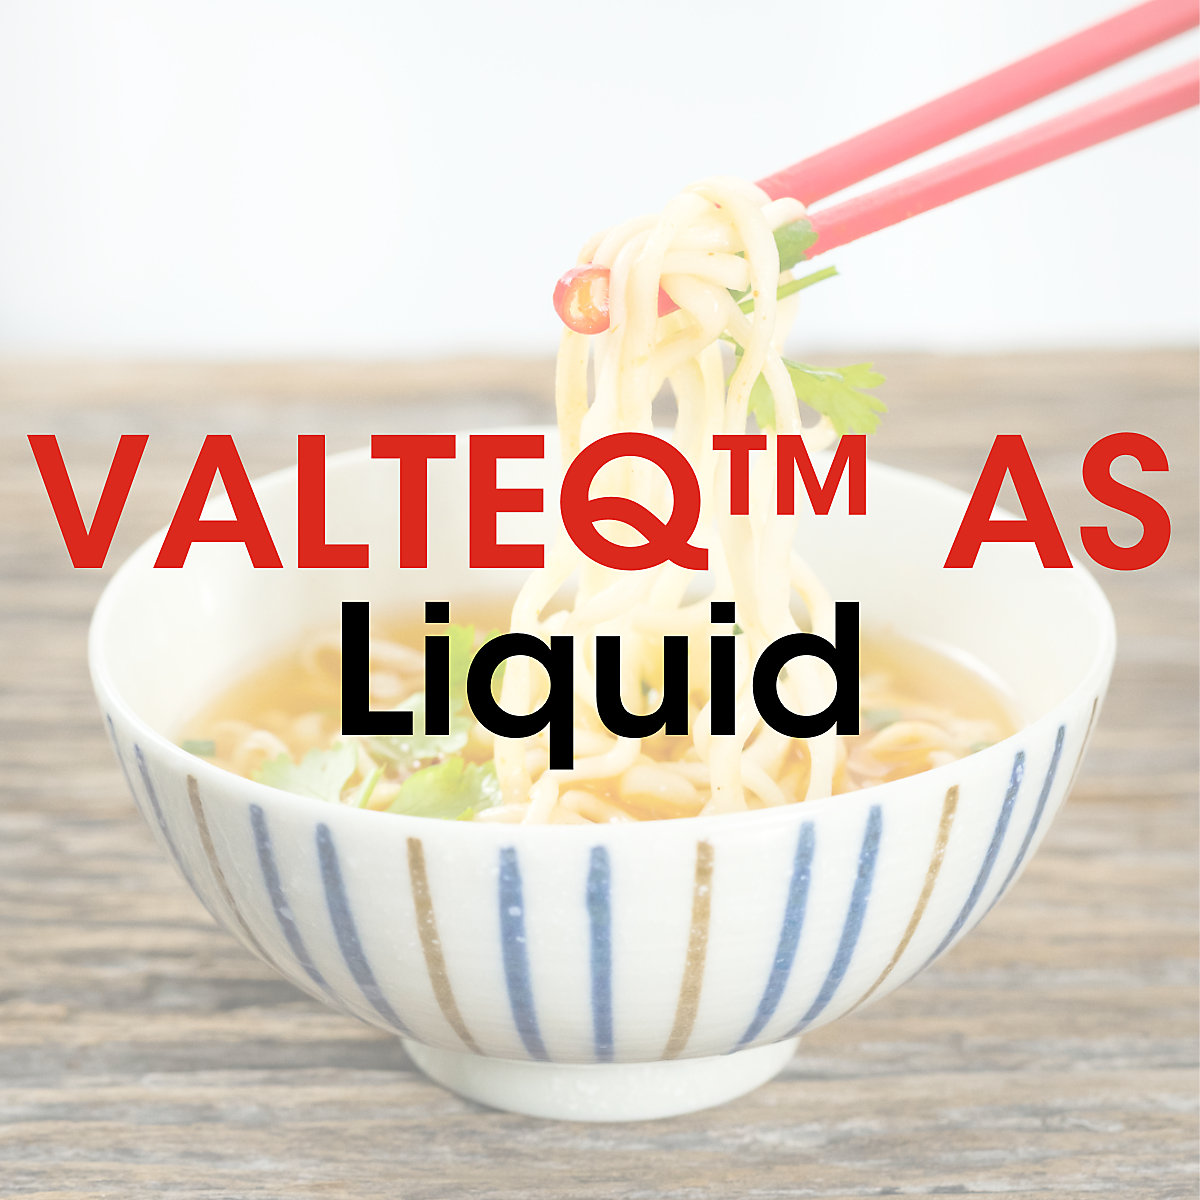 VALTEQ™ AS Liquid